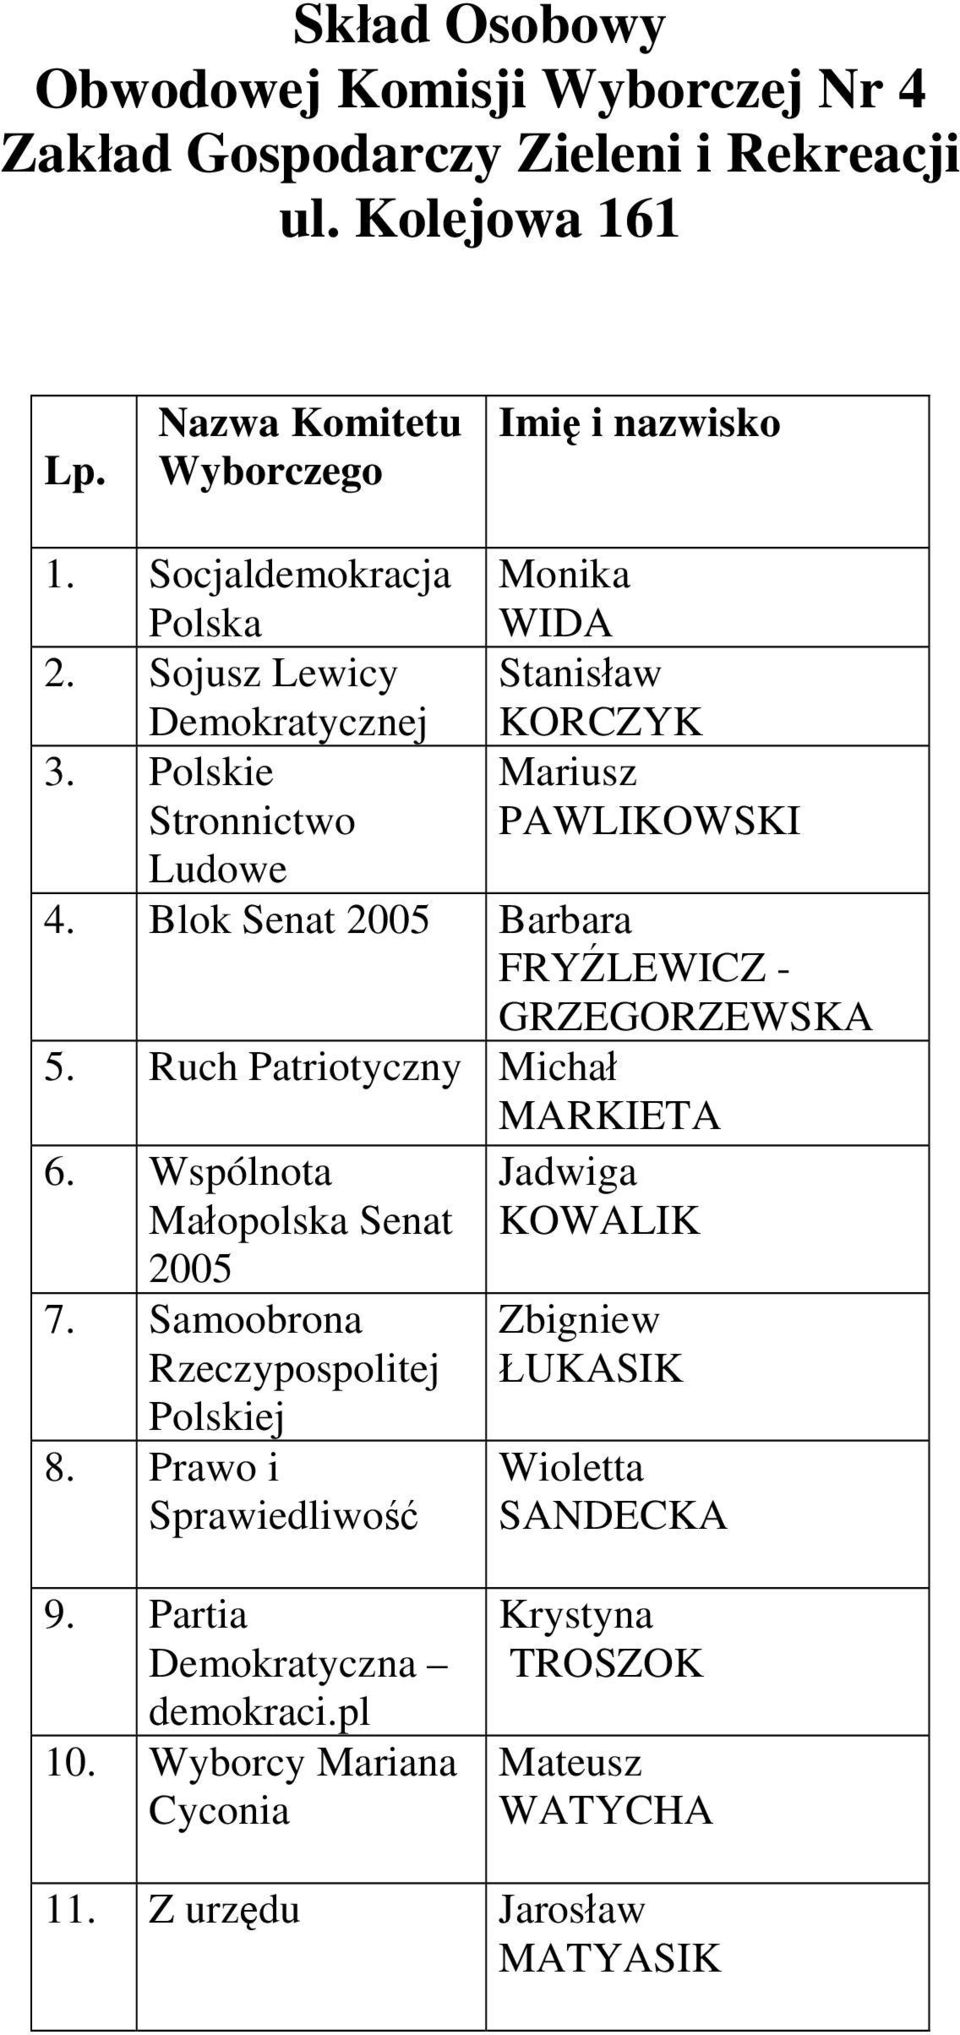 Blok Senat Barbara FRYŹLEWICZ - GRZEGORZEWSKA 5. Ruch Patriotyczny Michał MARKIETA 6. Wspólnota 7.